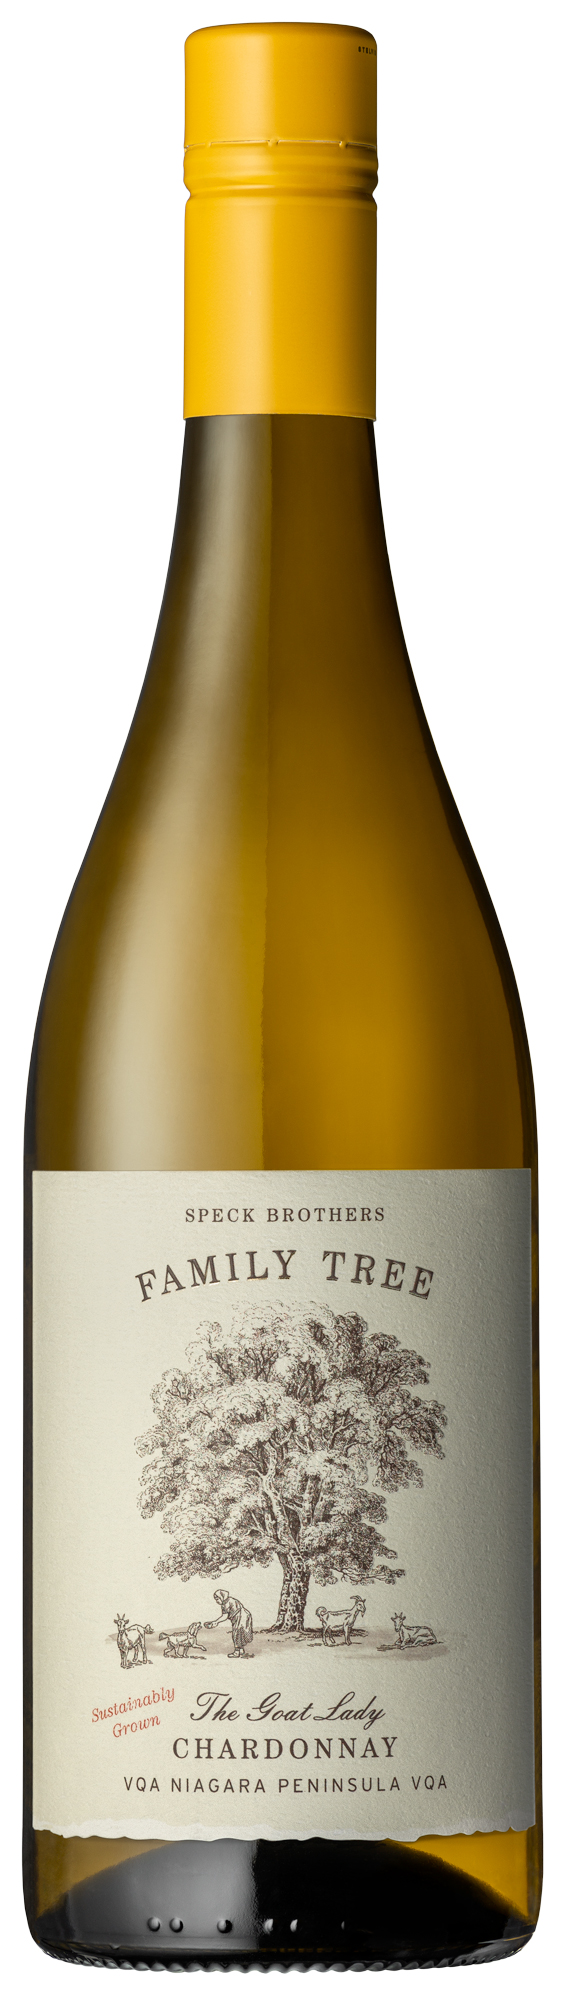 Speck Bros. Family Tree ‘The Goat Lady’ Chardonnay 2021, VQA Niagara Peninsula